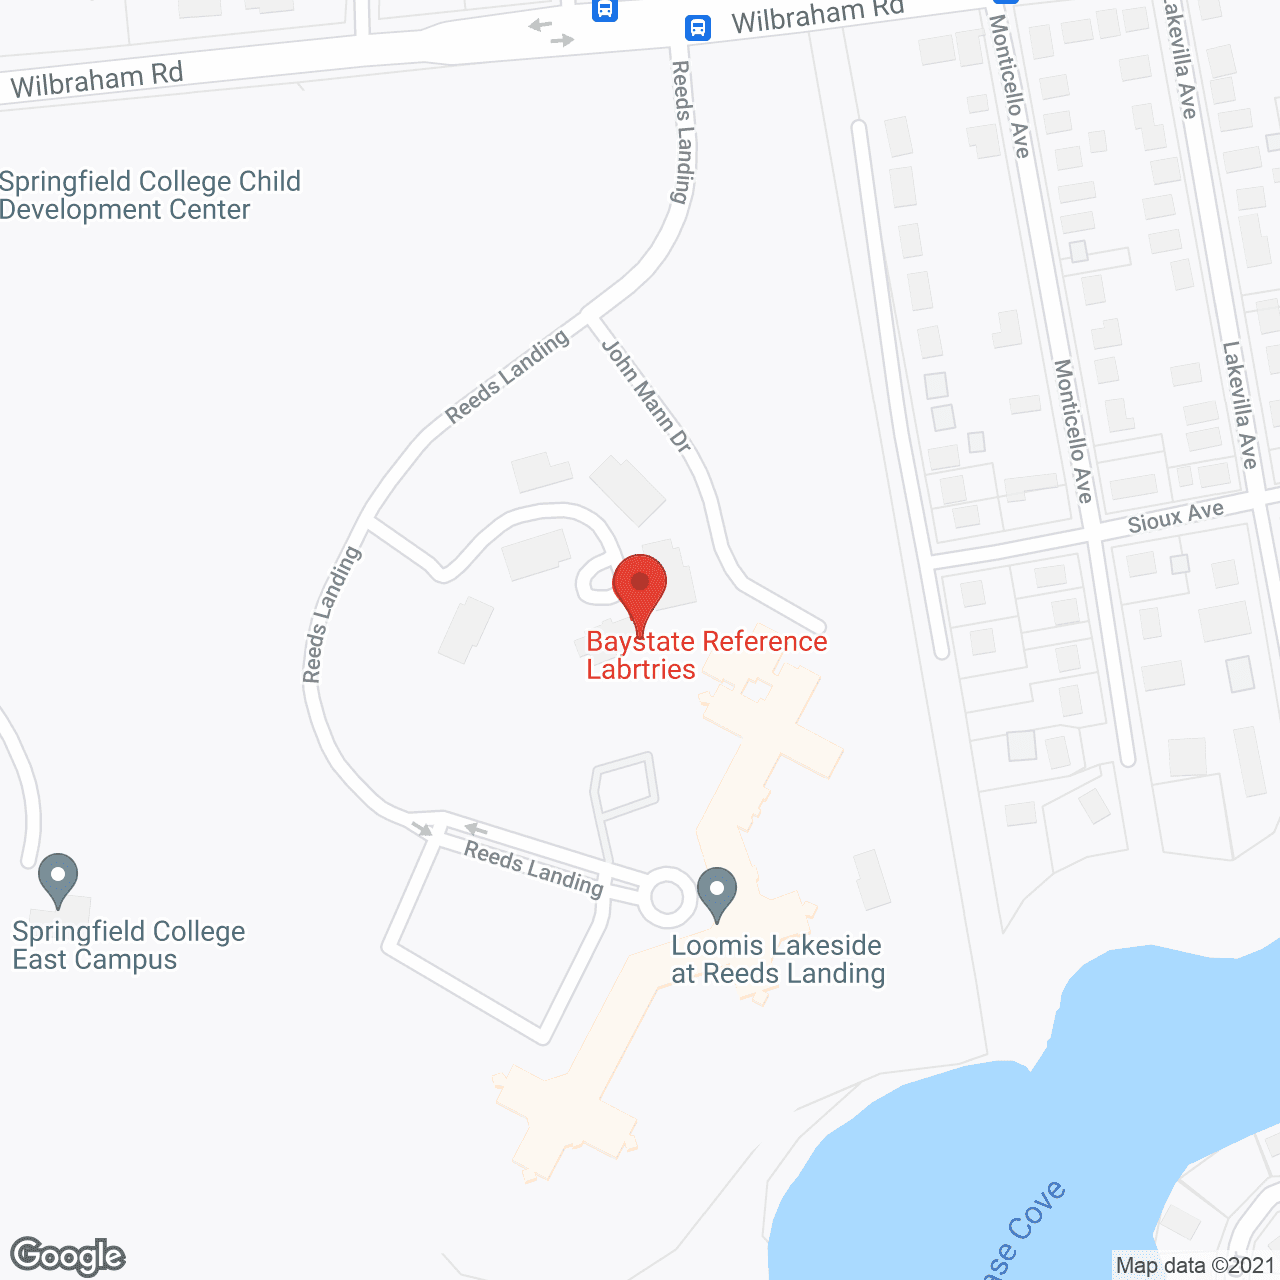 Reeds Landing in google map